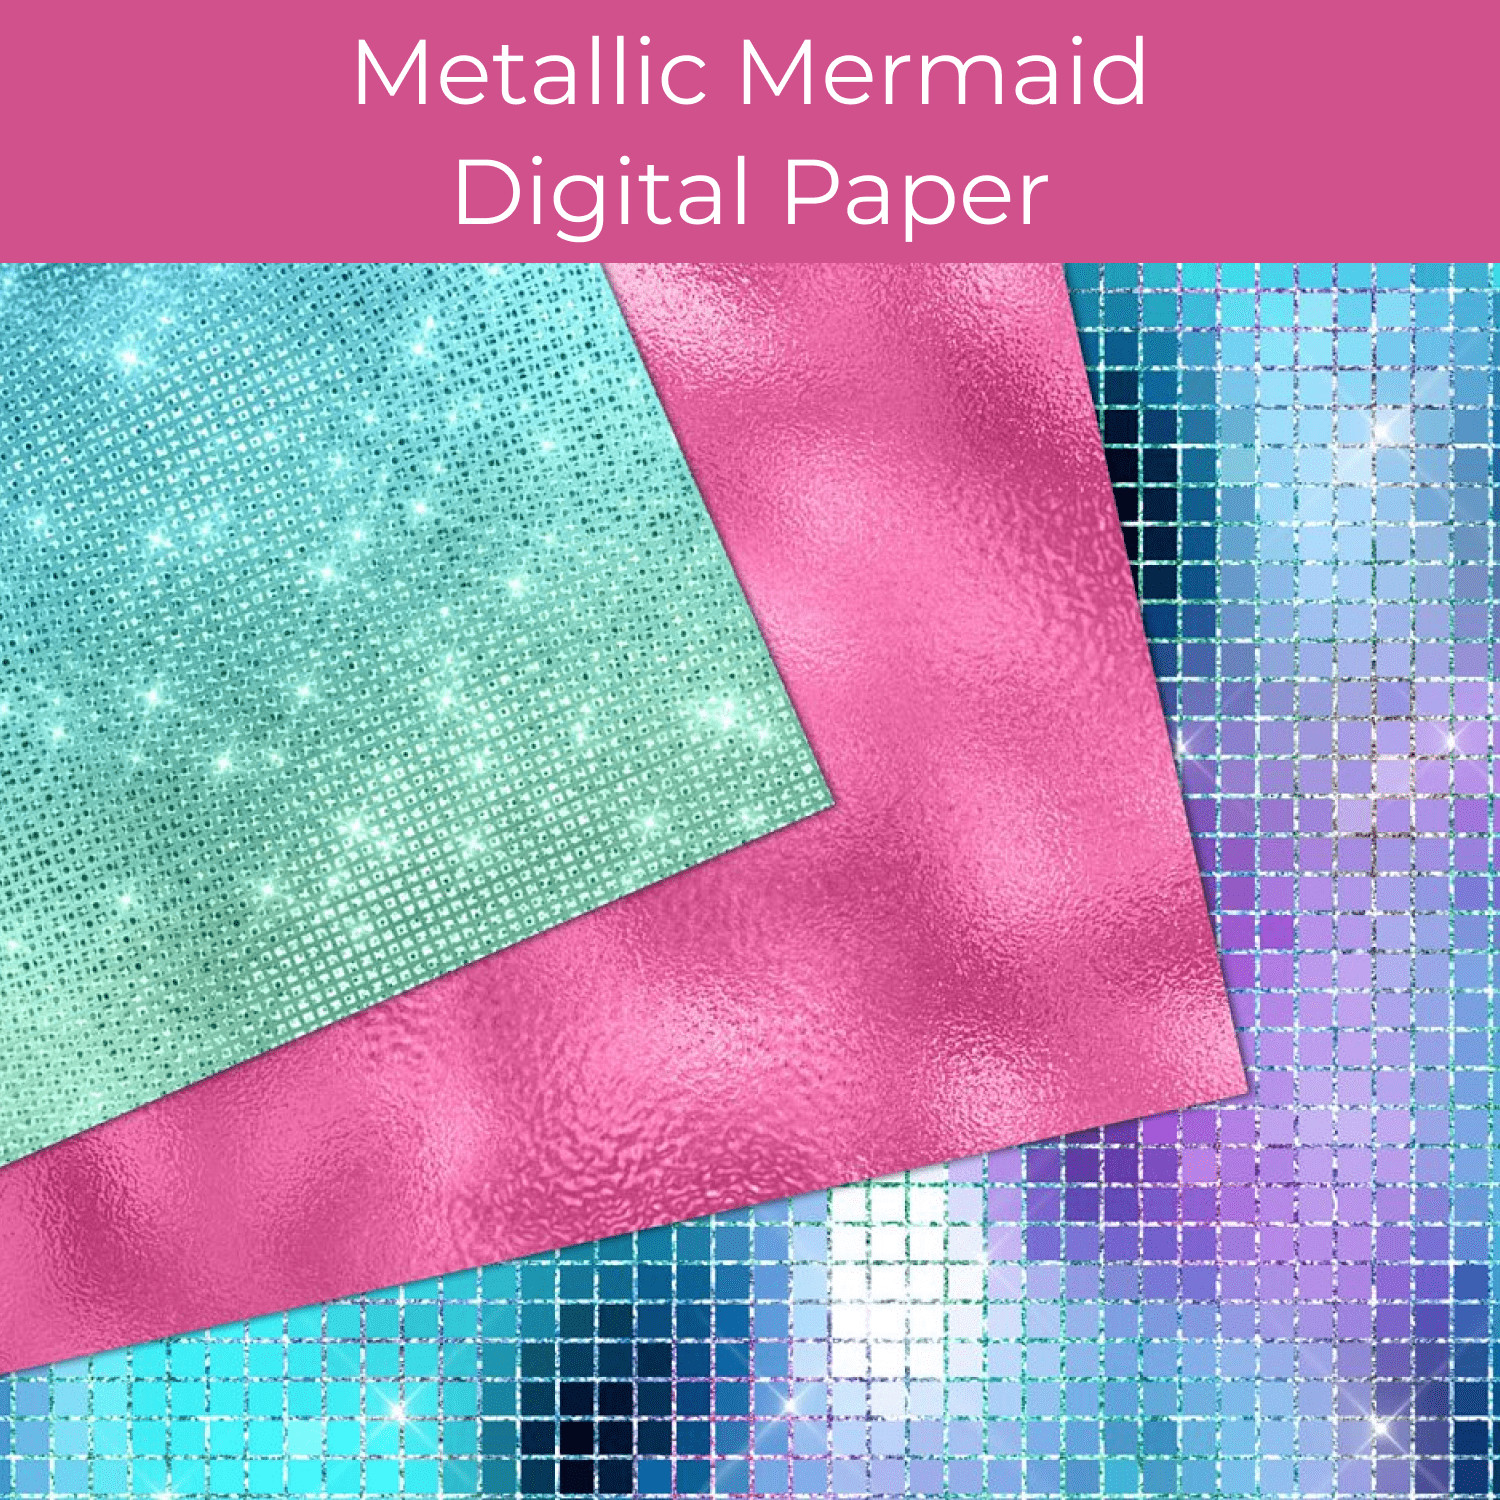 Metallic Mermaid Digital Paper cover.